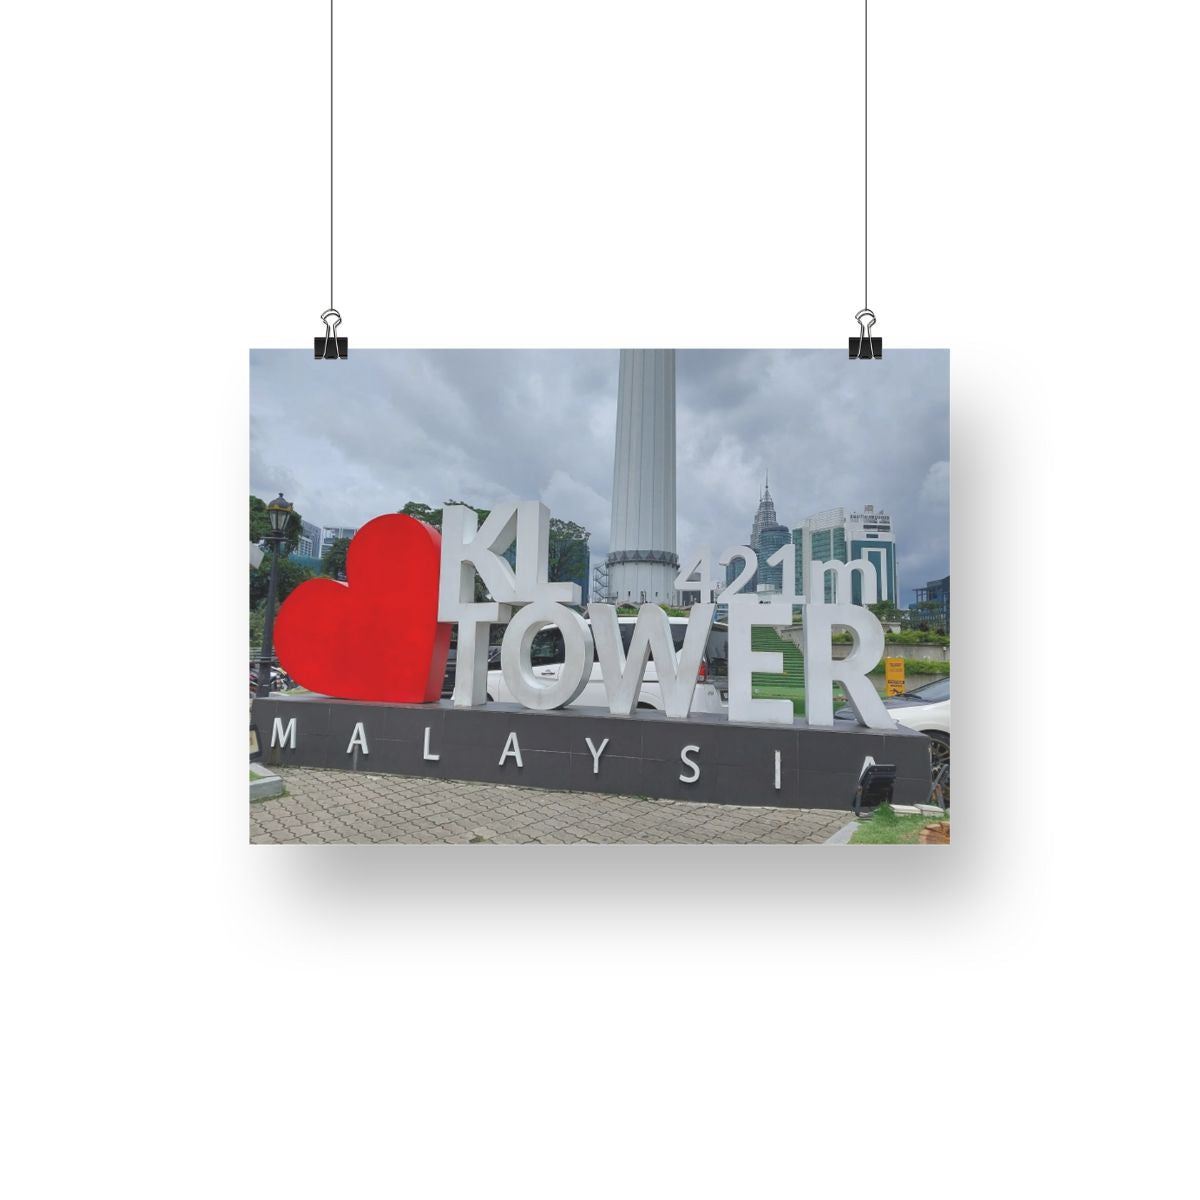 Kuala Lumpur: KL Kulesi